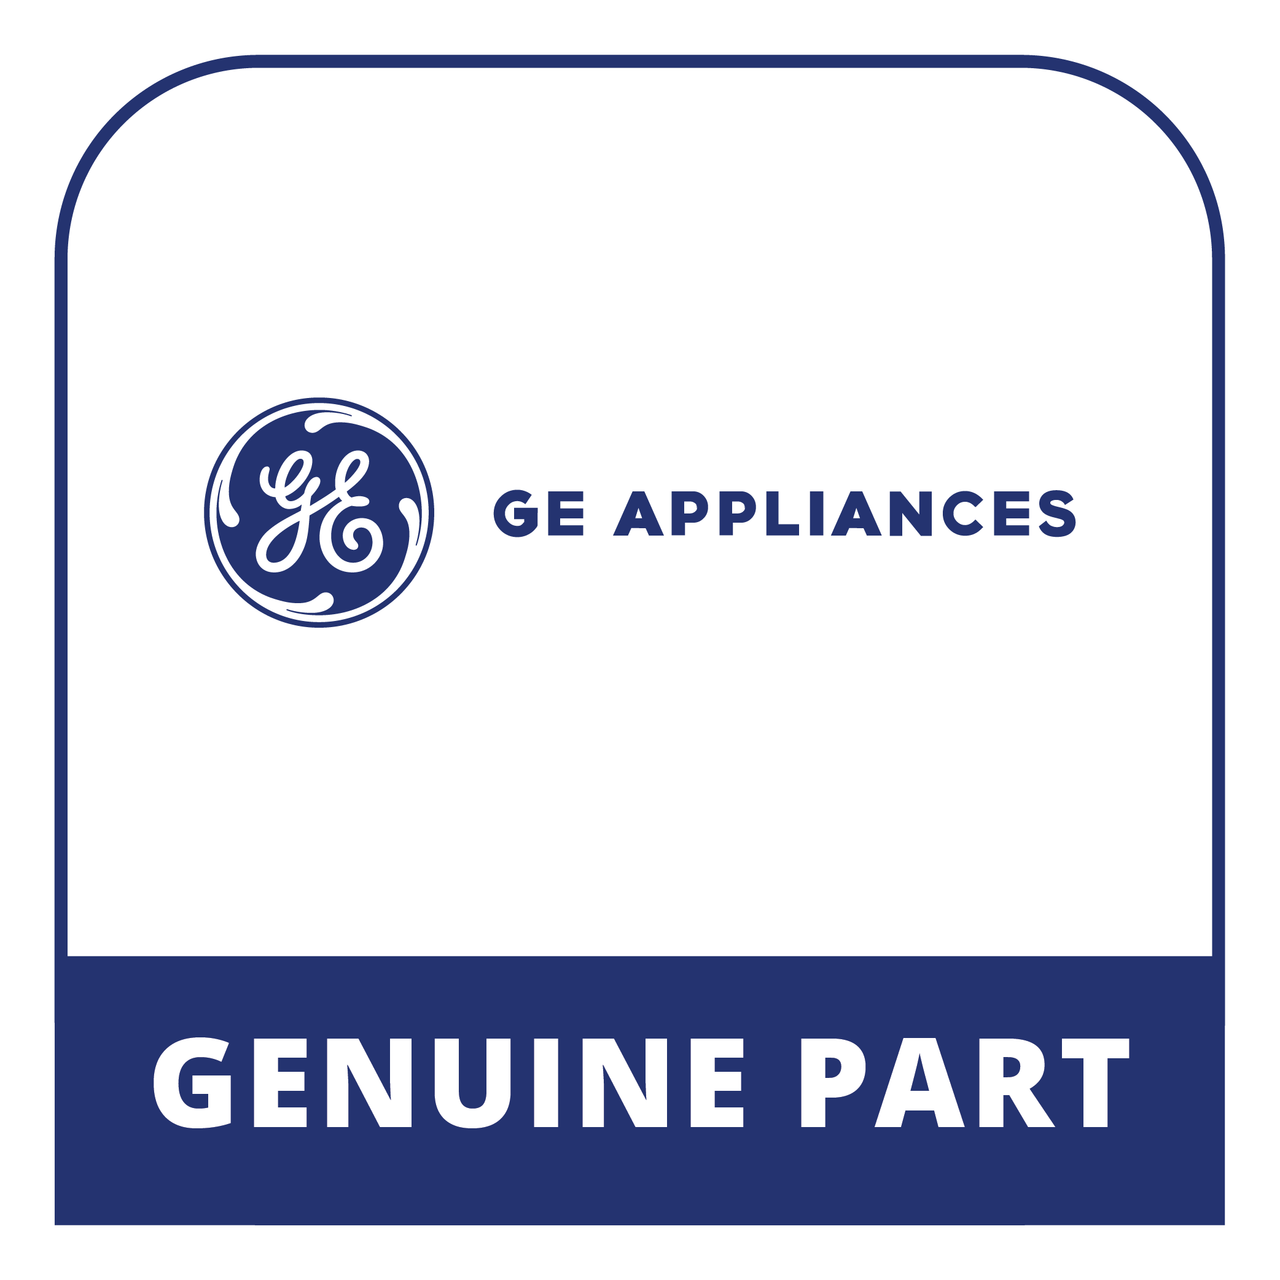 GE Appliances WB21X48709 - Front Burner Knob Valve - Genuine GE Appliances Part